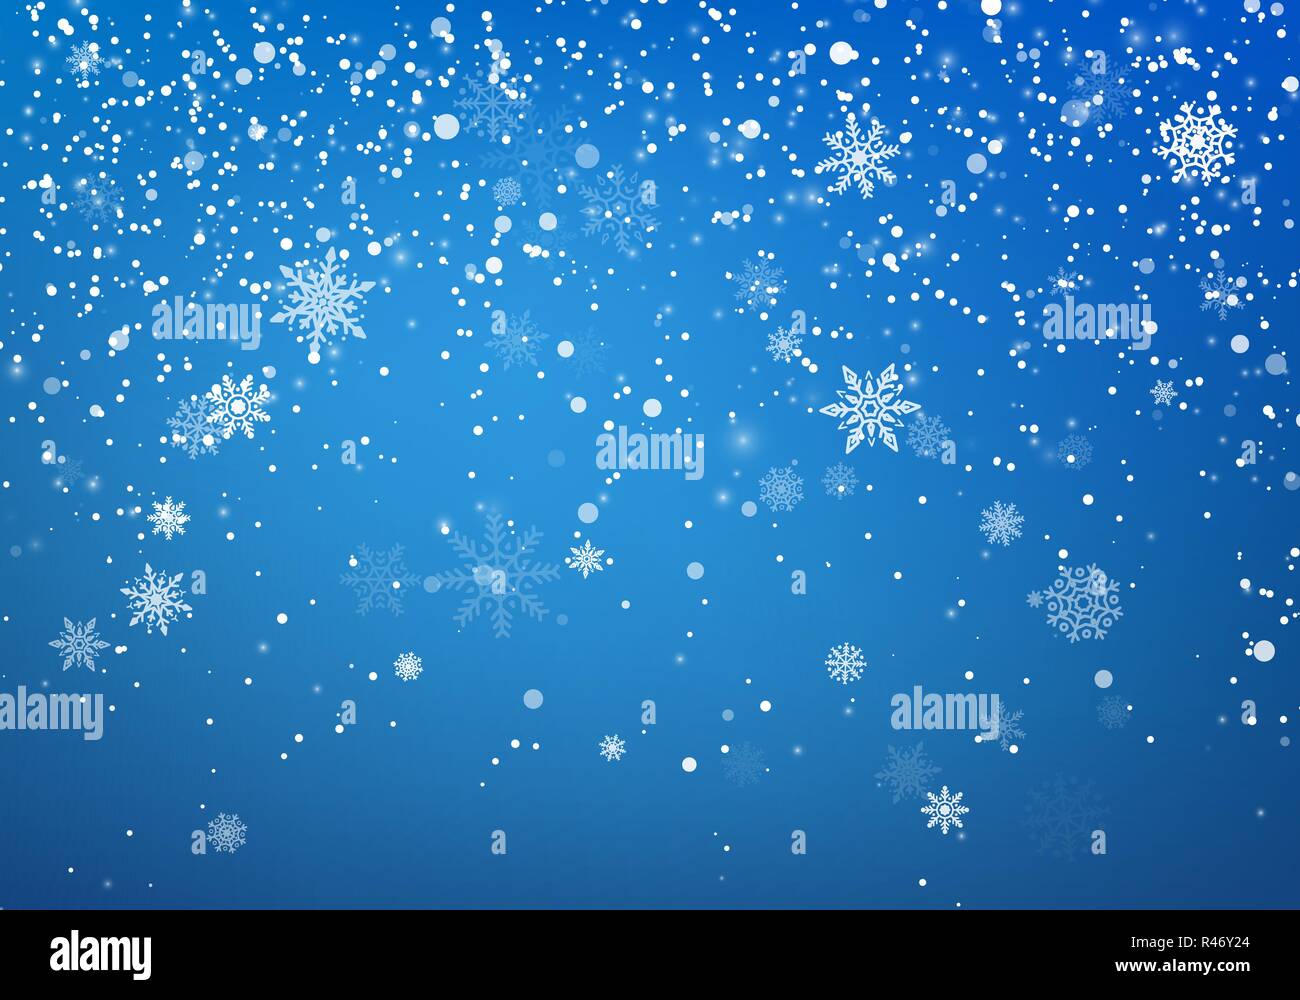 Schneefall Weihnachten Hintergrund. Flying Schneeflocken und Sterne auf Winter und blauer Himmel. Winter wite Schneeflocke overlay Vorlage. Vector Illustration Stock Vektor